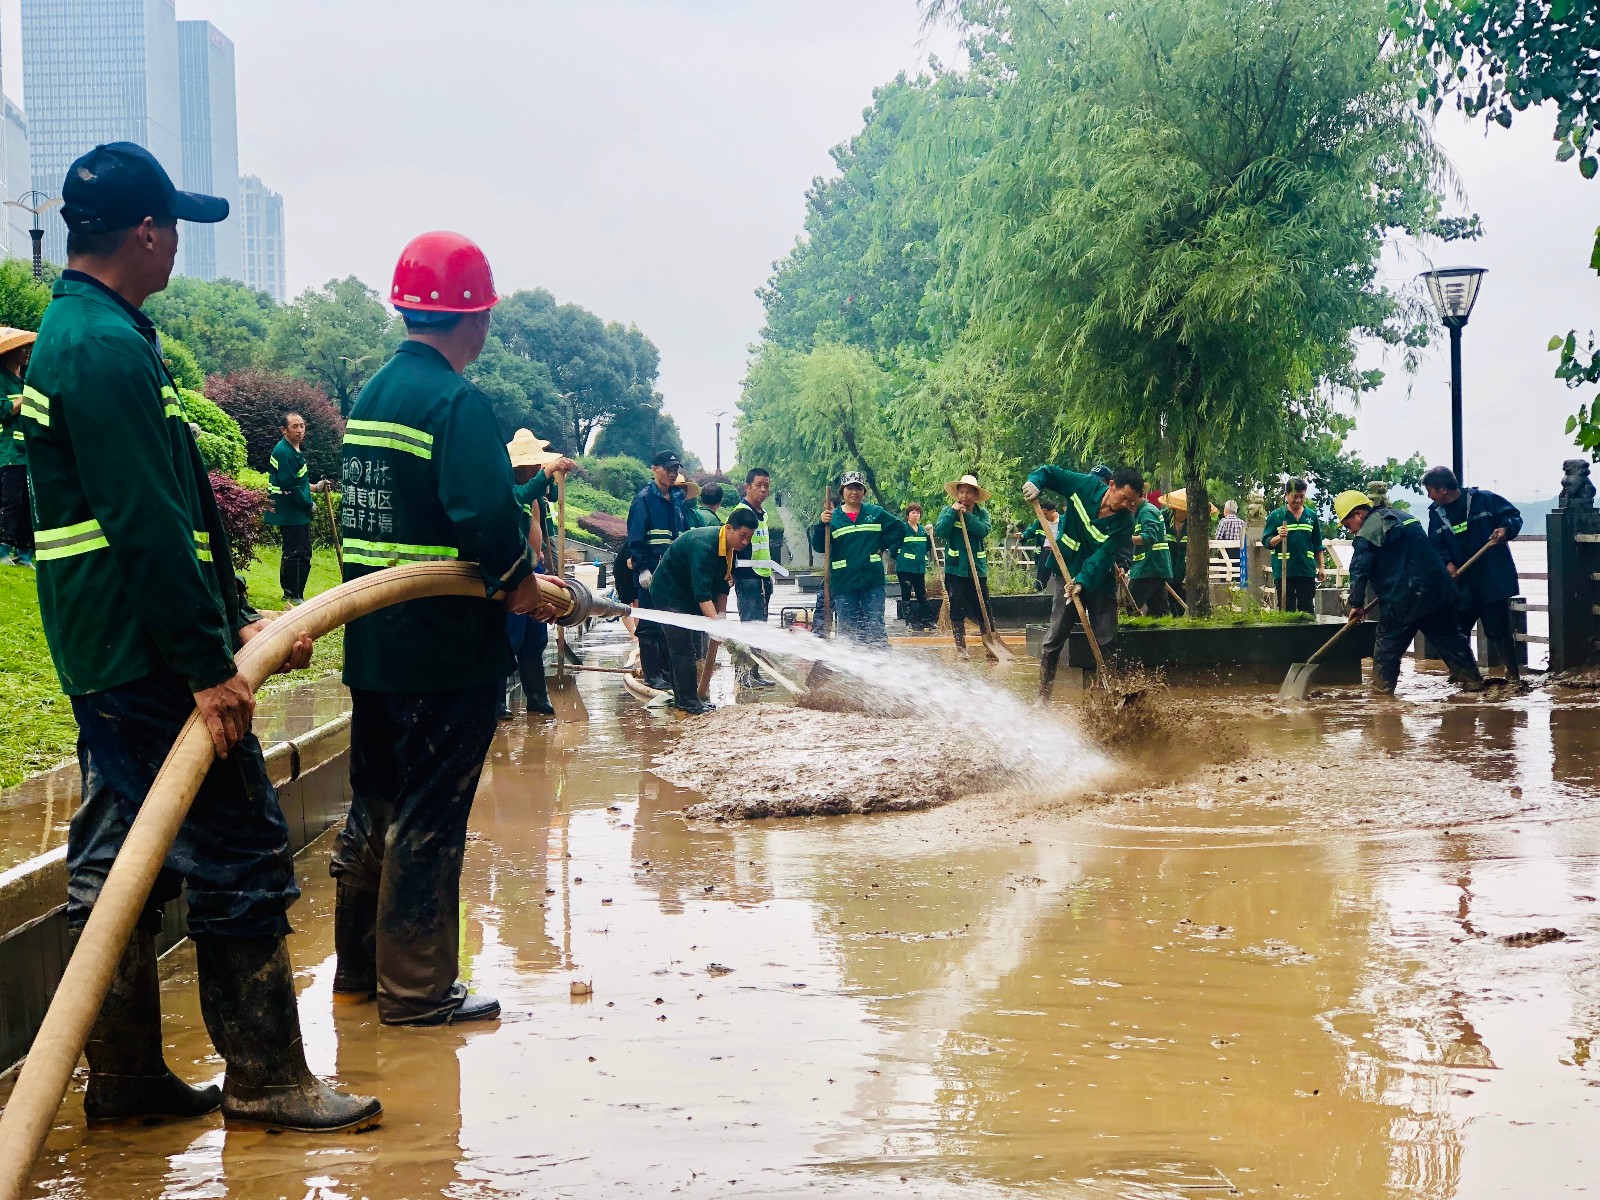 湘江风光带风帆广场附近，开福区园林绿化维护人员用高压水龙冲刷洪水留下的厚积淤泥。长沙晚报全媒体记者 李卓 摄